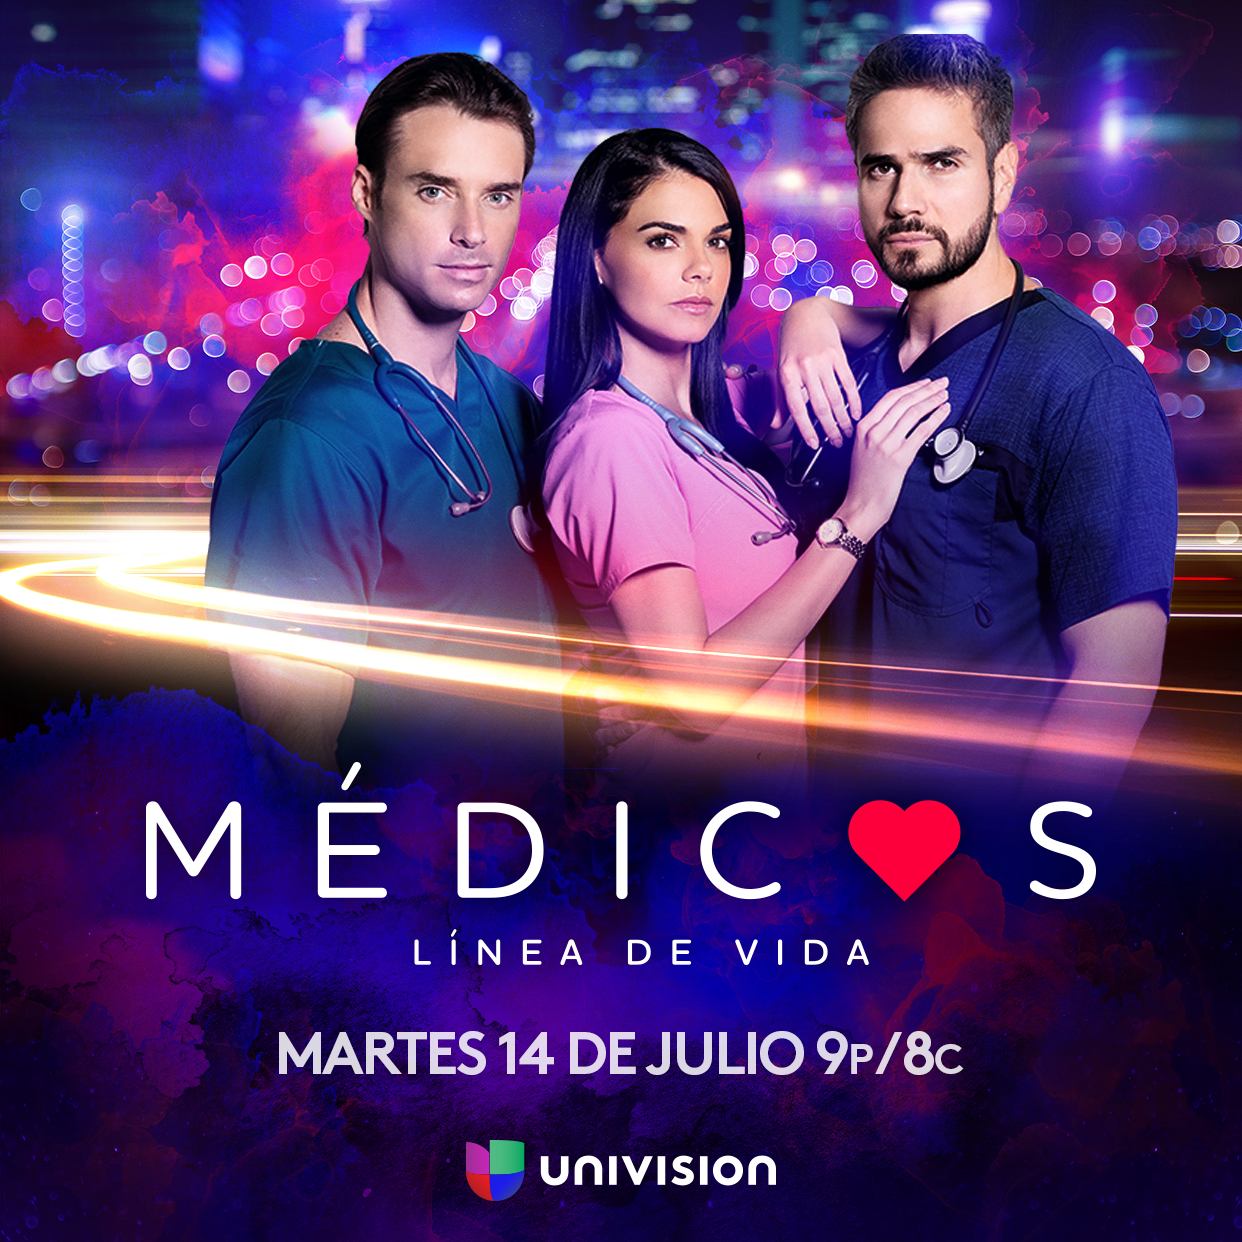 “MÉDICOS, LÍNEA DE VIDA” se estrenará el 14 de Julio por Univision